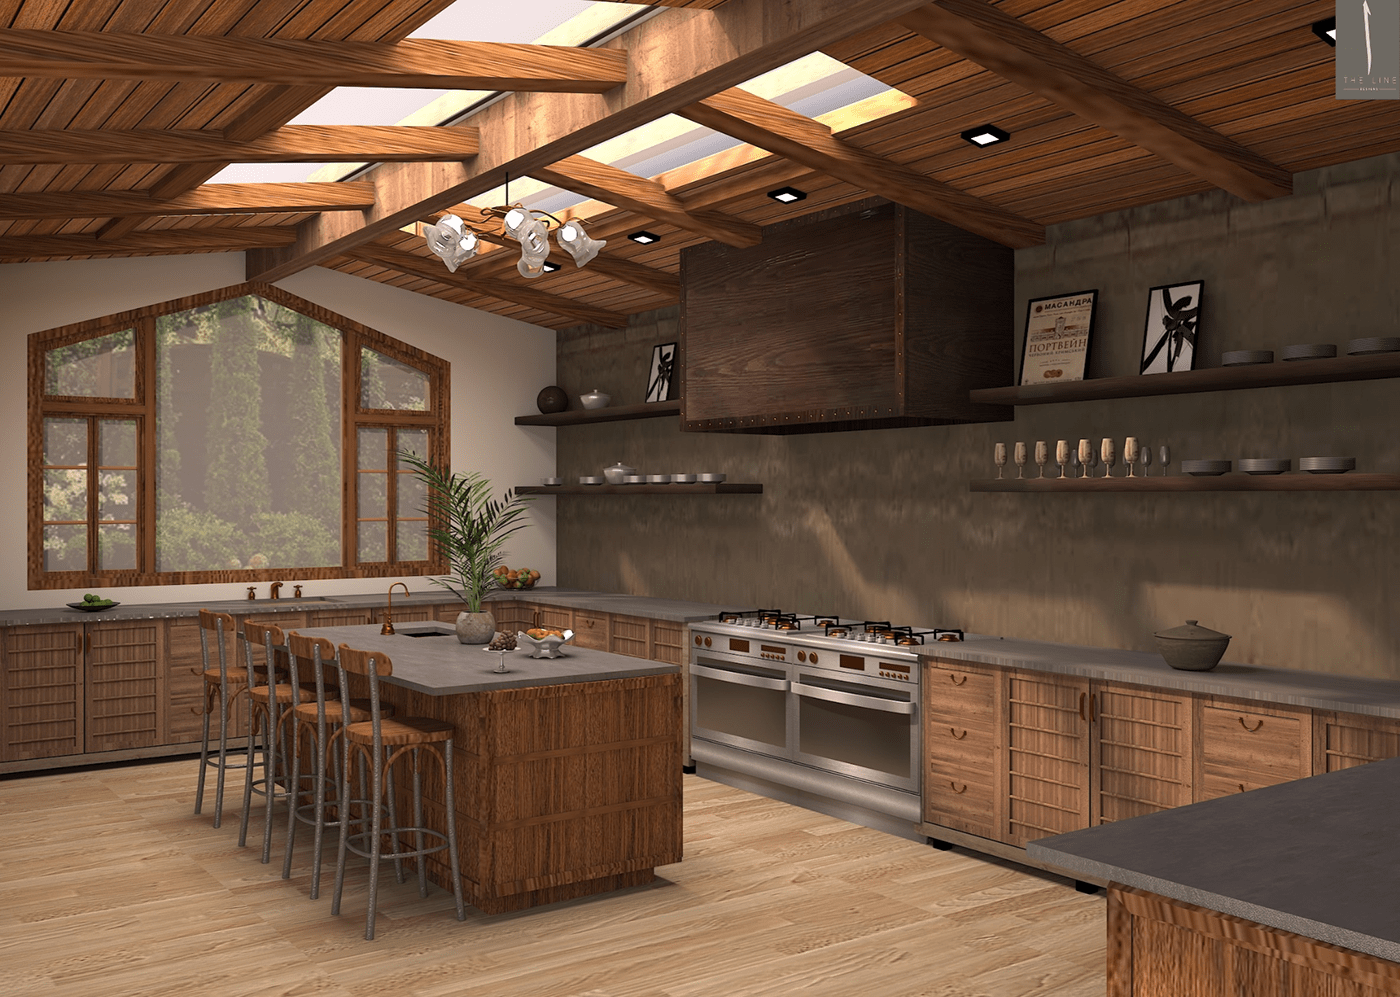 3D 3ds max countertop interior design  kitchen kitchen design modern Render visualization vray